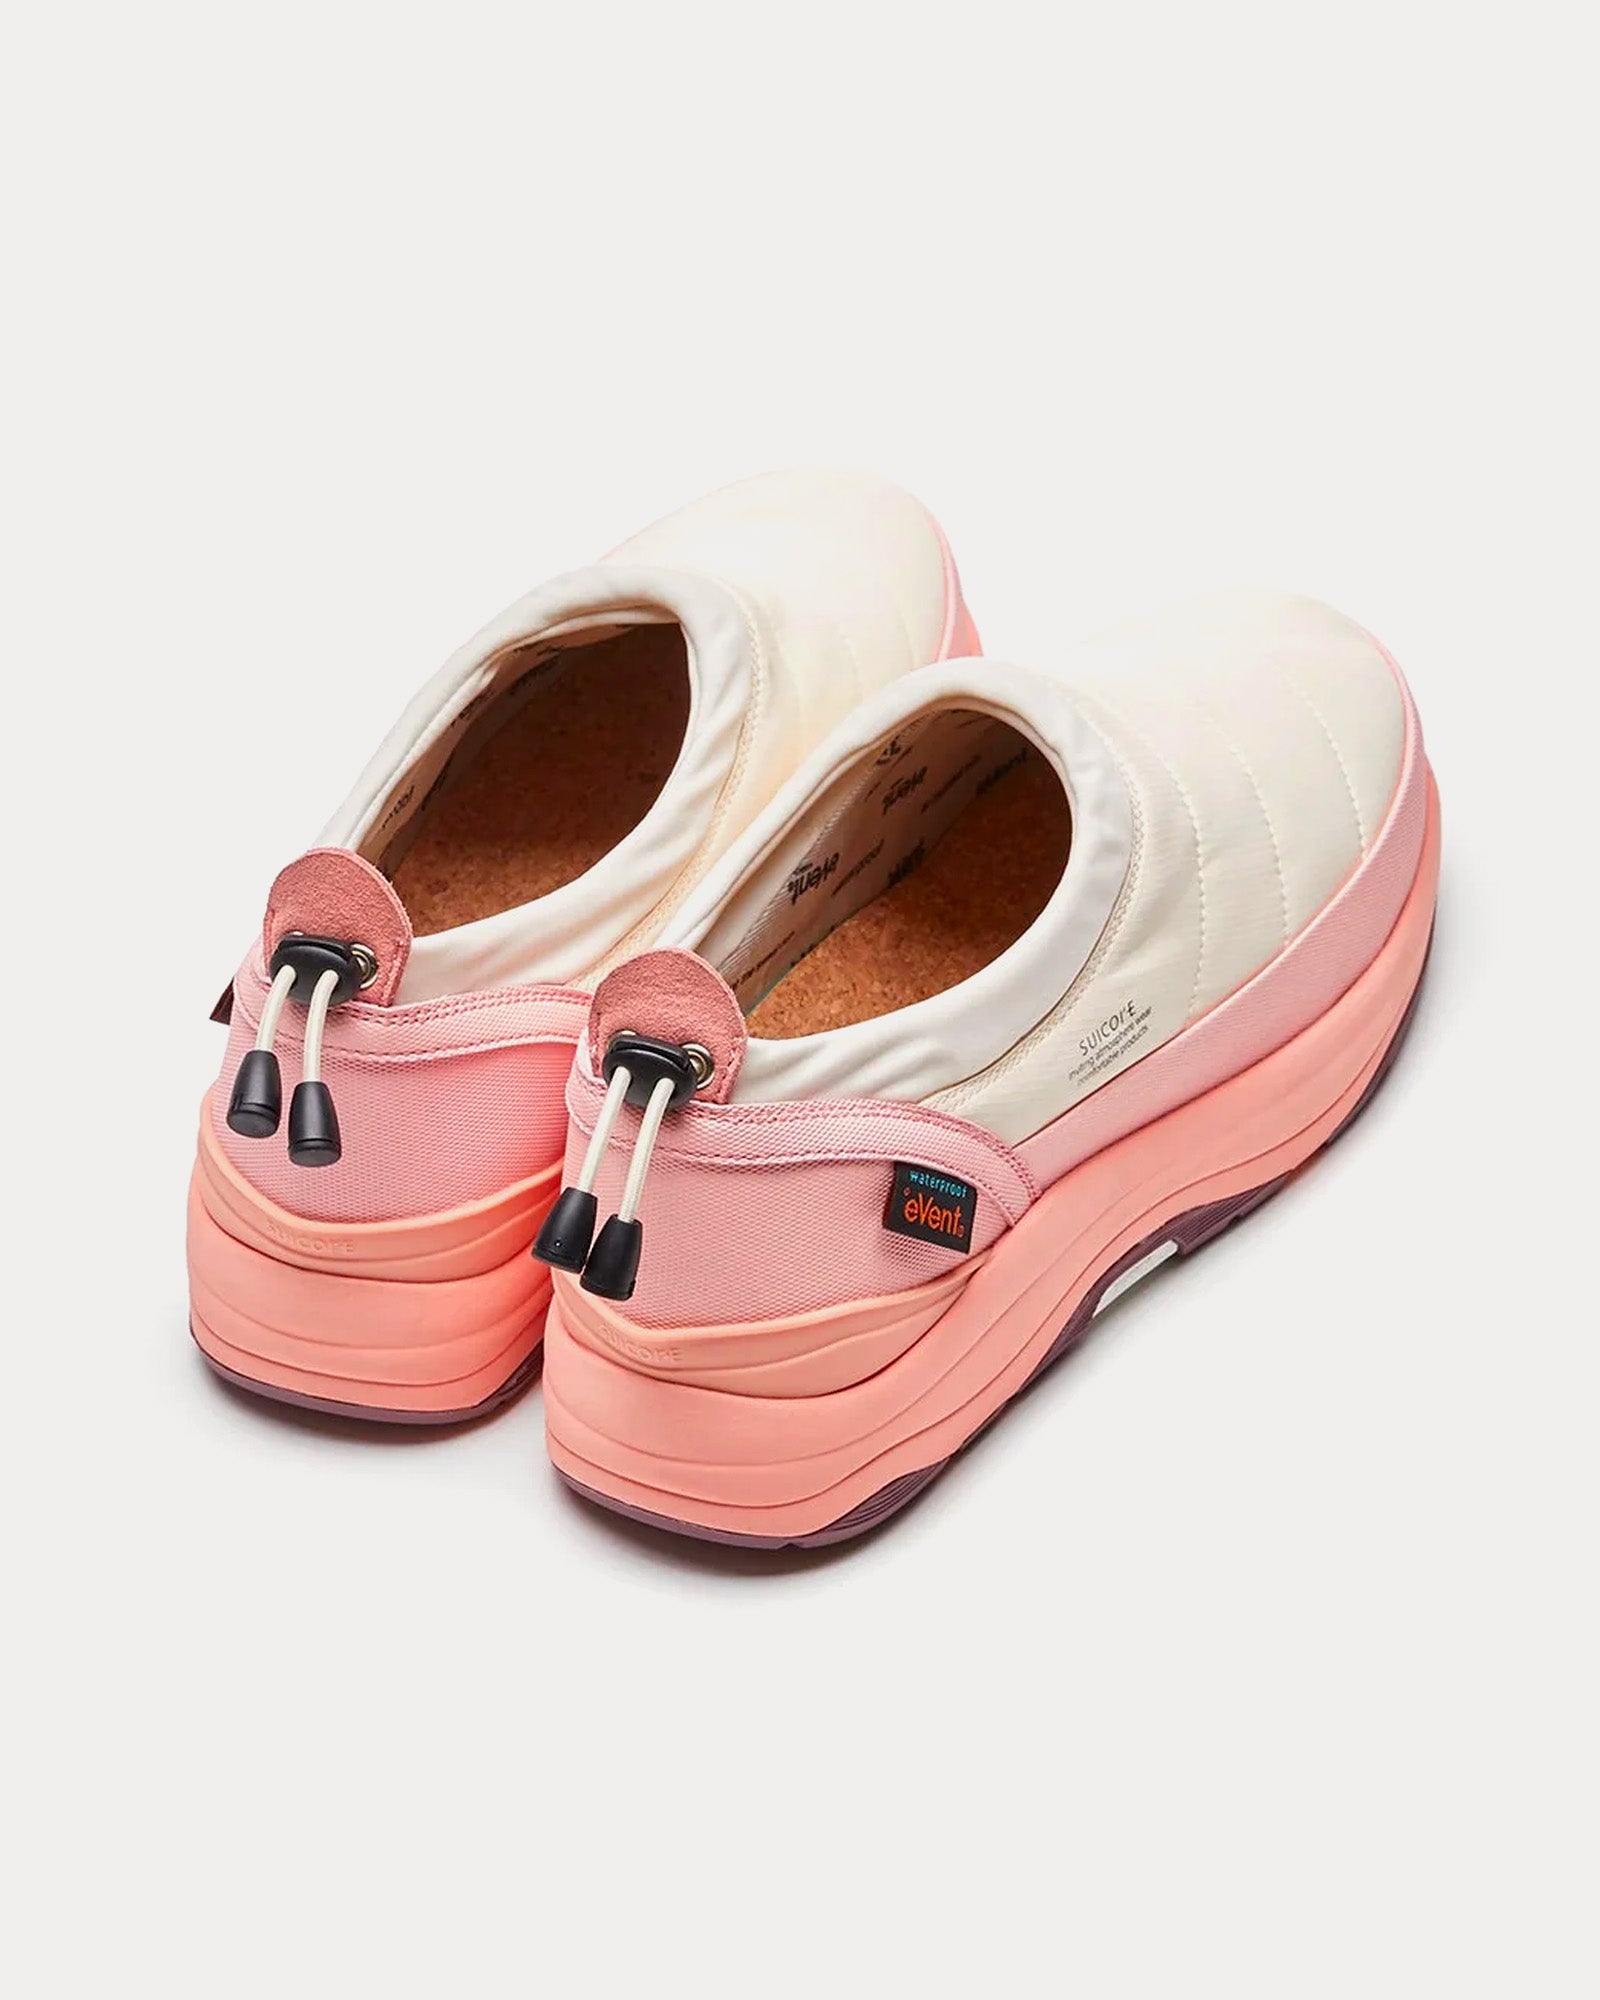 Suicoke - PEPPER-mod-ev Ivory / Pink Slip On Sneakers